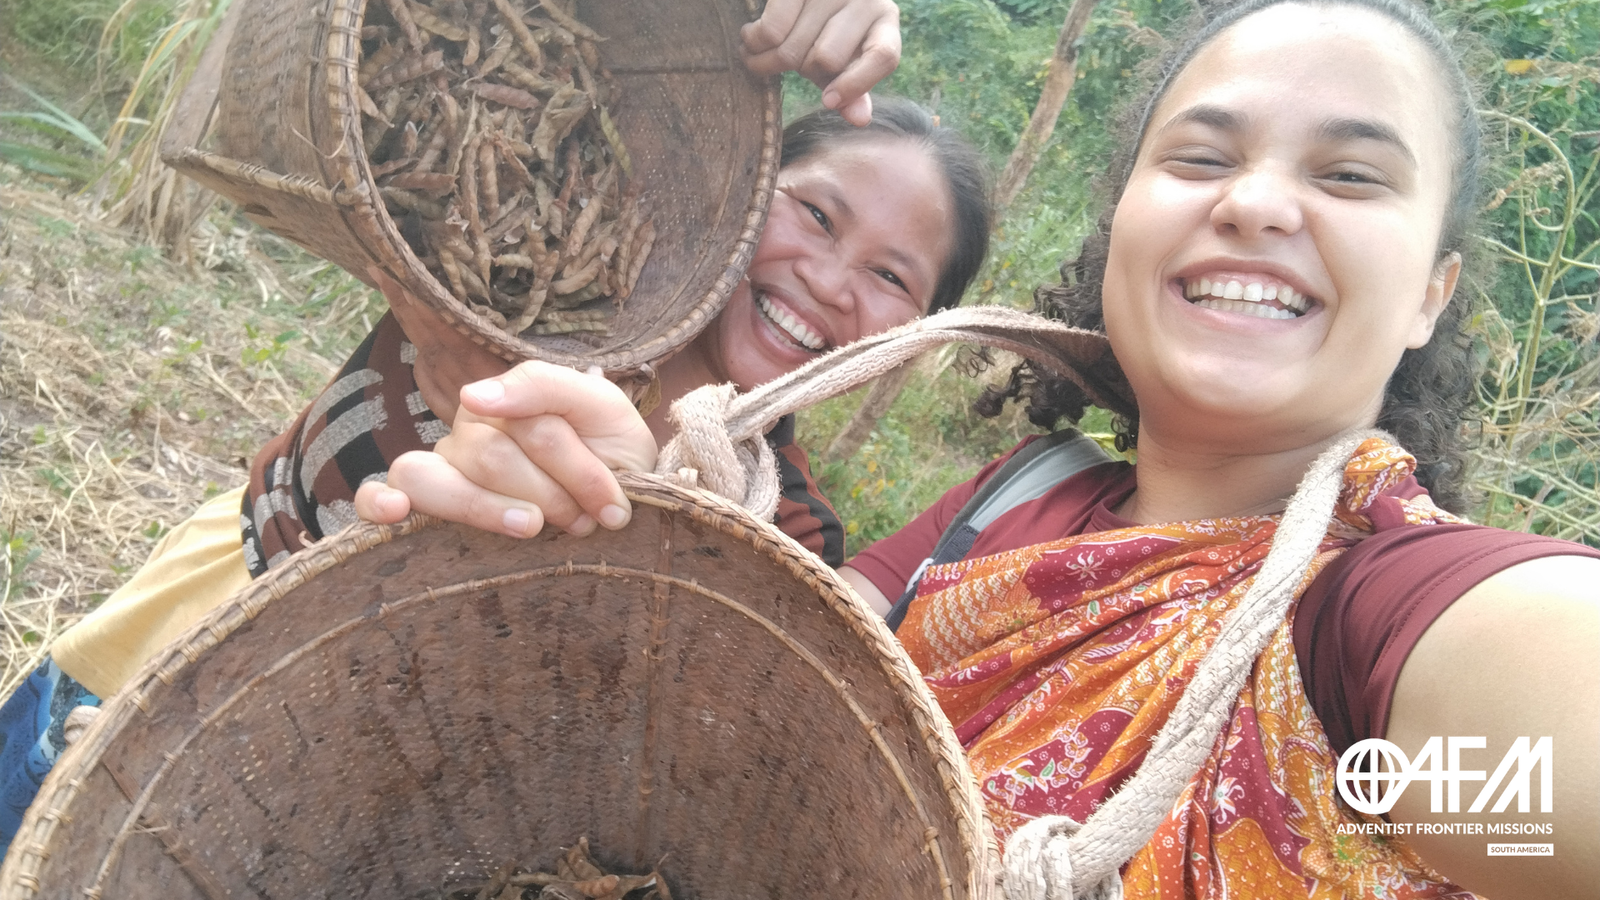 Missionária Brasileira com nativa palawana segurando cestos com a colheita e sorrindo